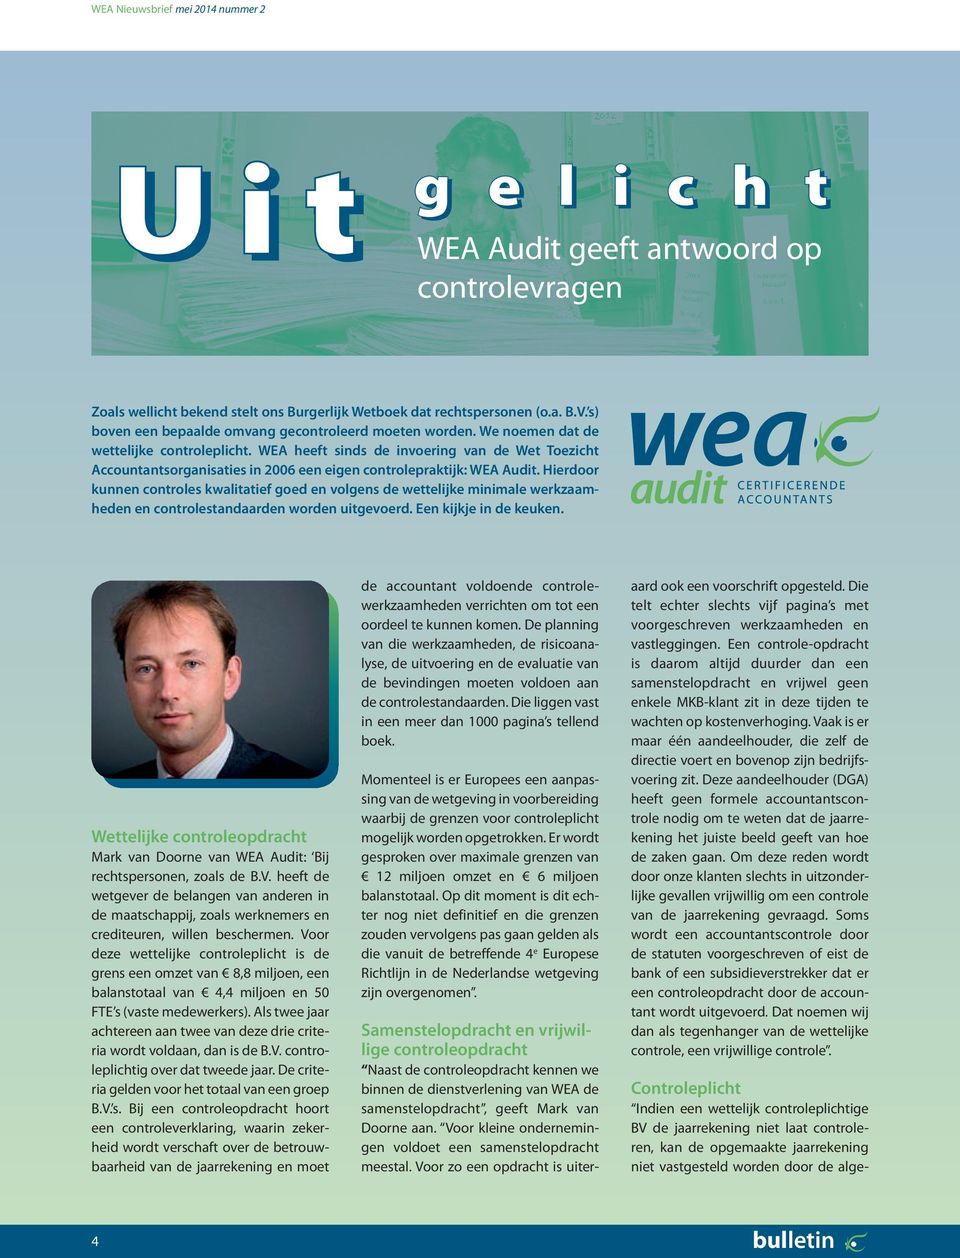 WEA heeft sinds de invoering van de Wet Toezicht Accountantsorganisaties in 2006 een eigen controlepraktijk: WEA Audit.